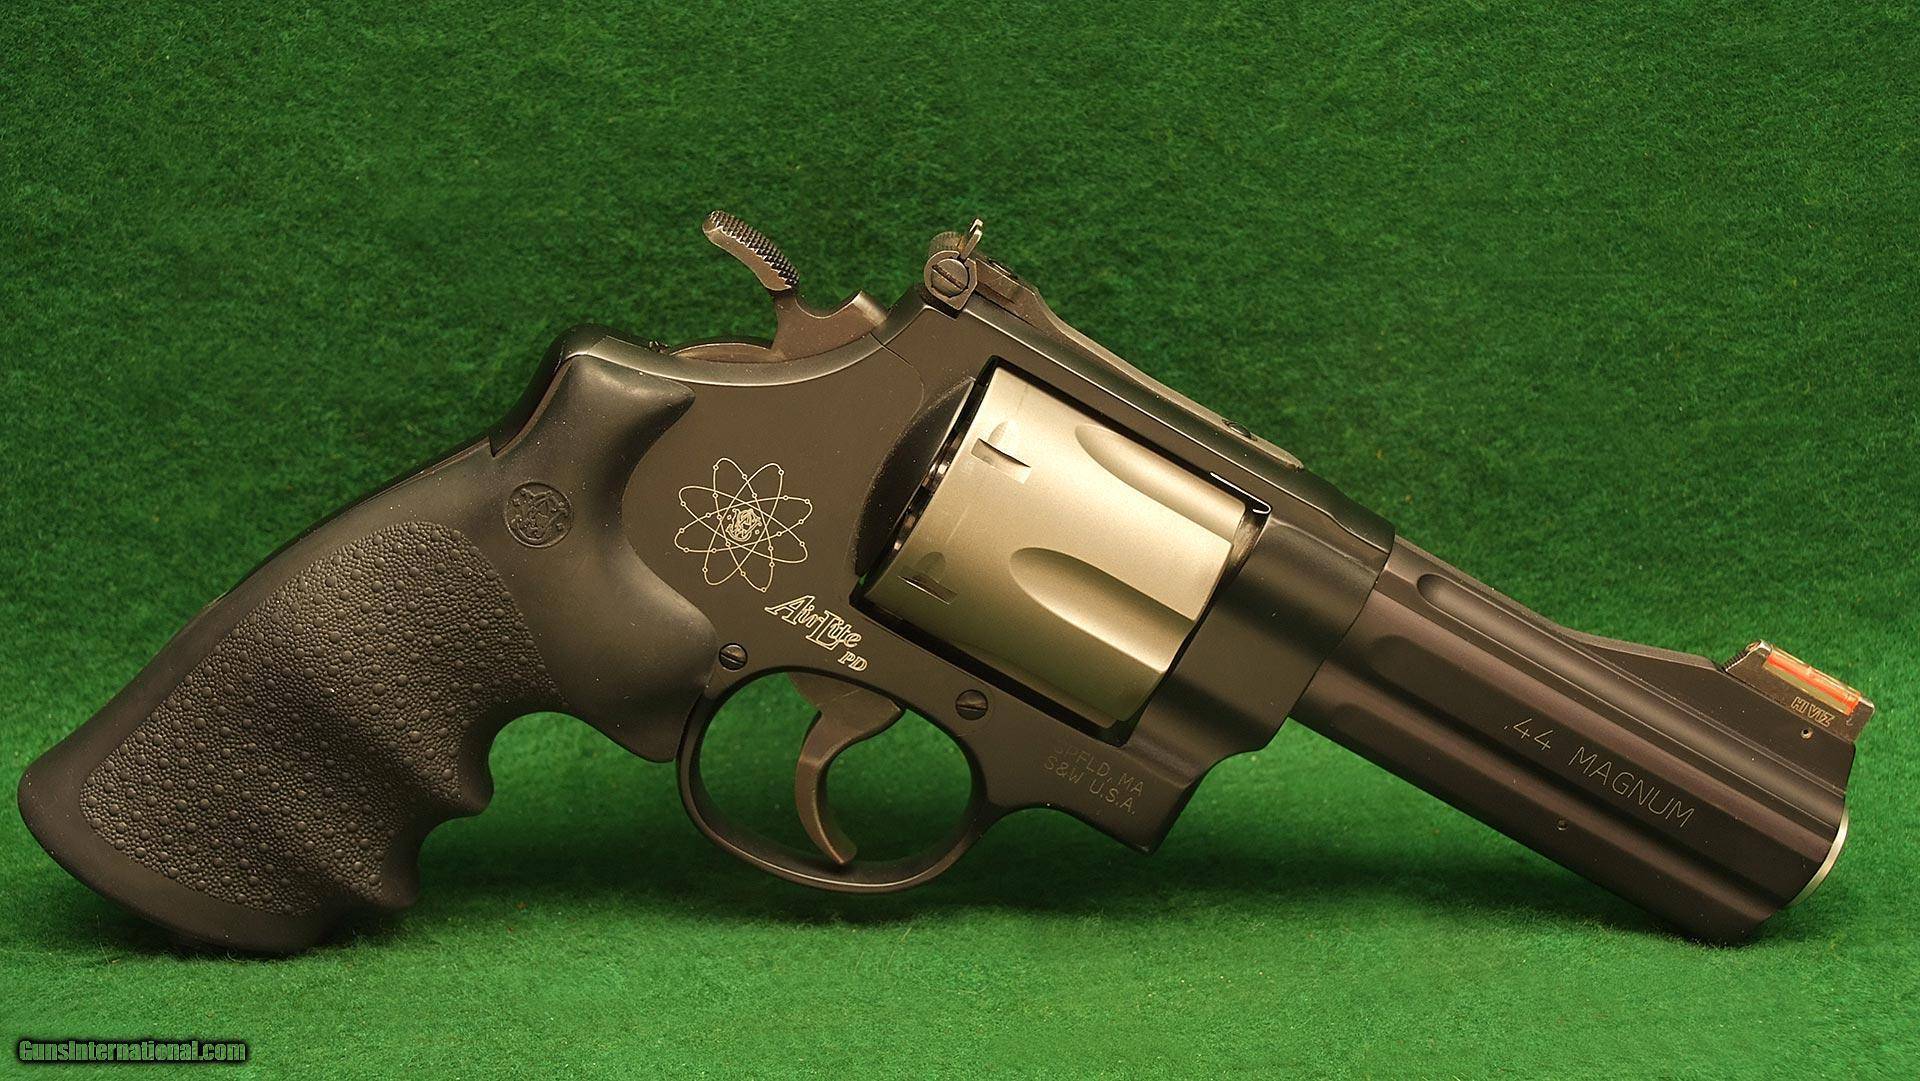 Smith & wesson model 29 magnum 44, описание и технические характеристики револьвера